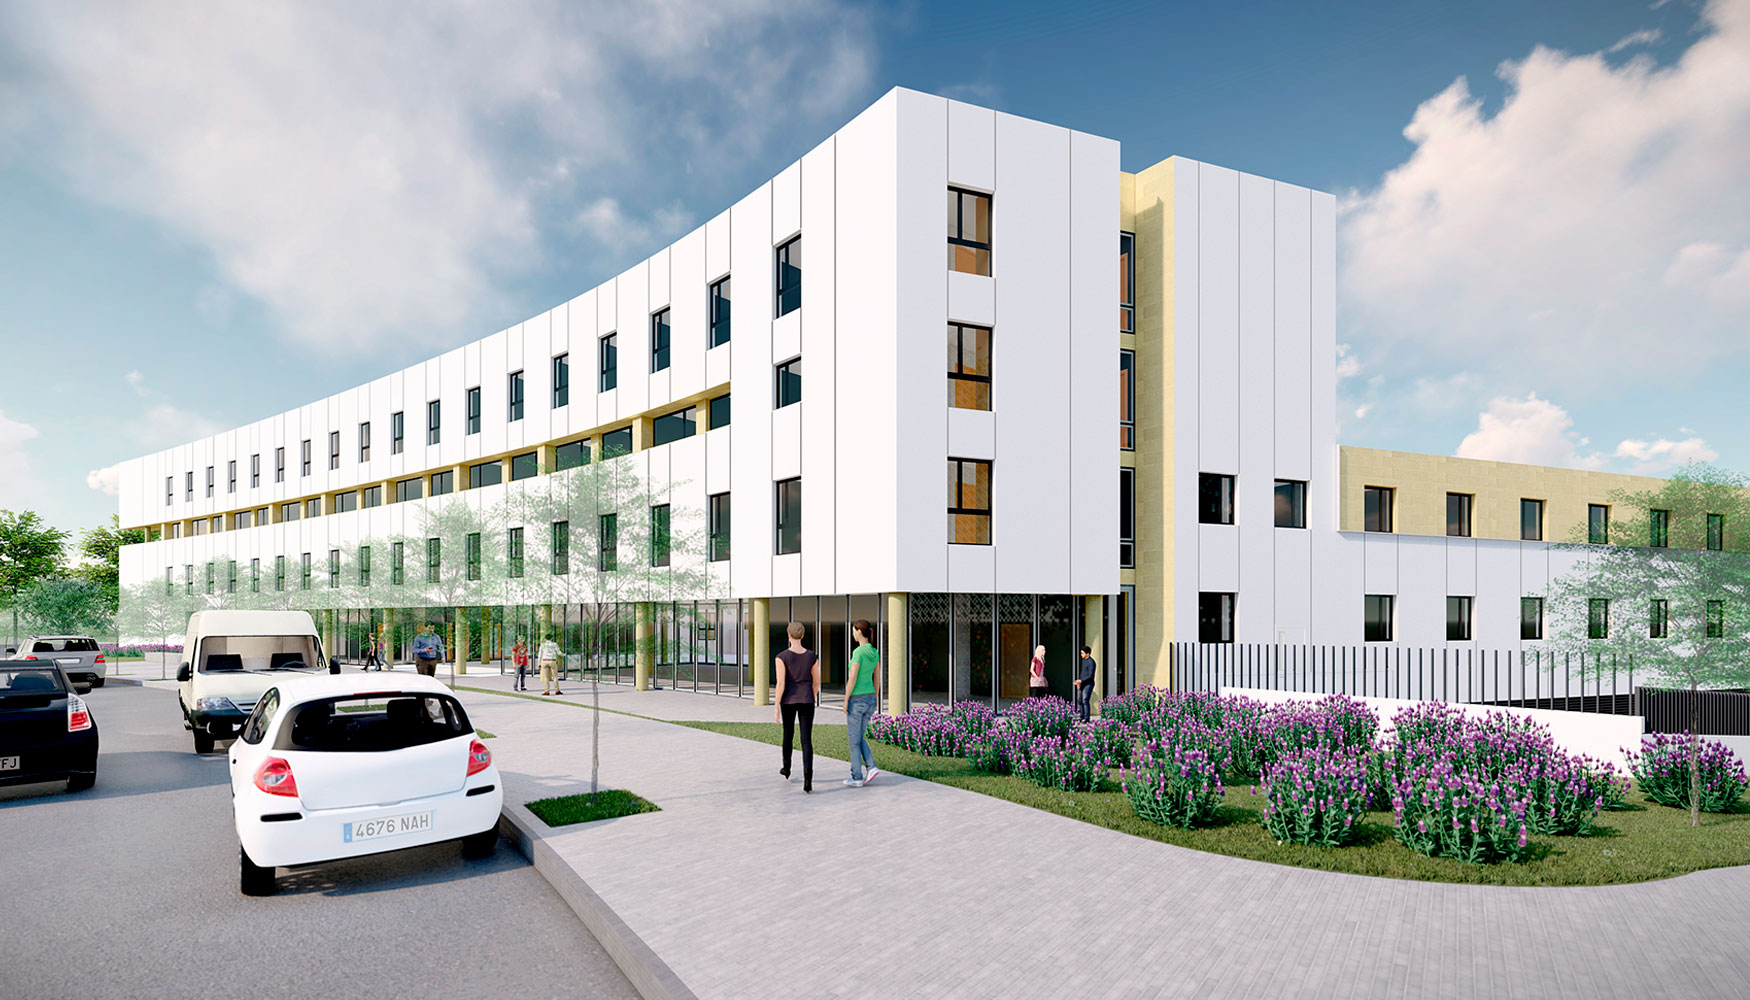 La residencia cuenta con una capacidad para 260 estudiantes y una inversin que supera los 8 millones de euros